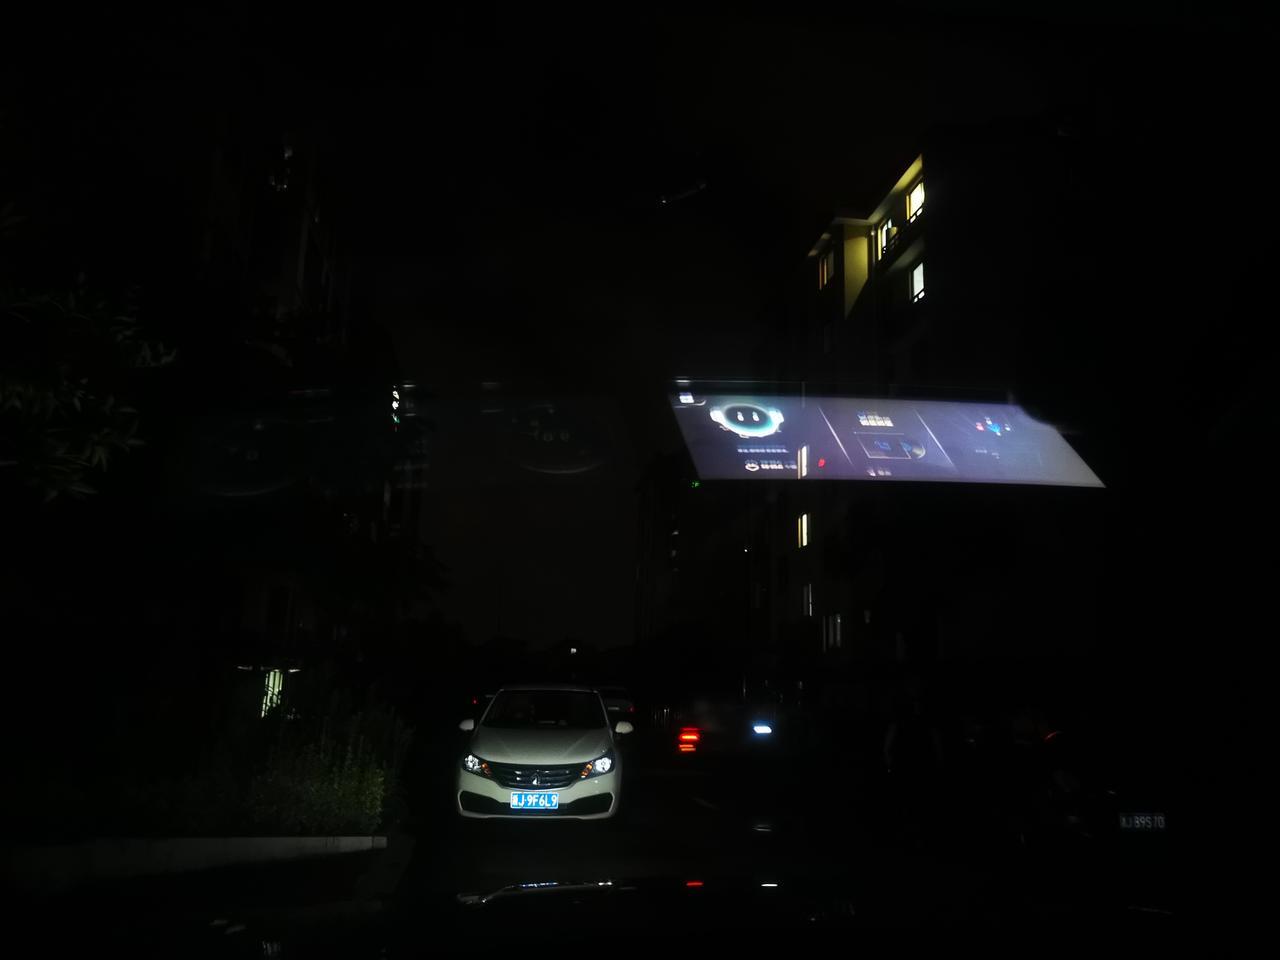 瑞虎8 plus 夜间开车双联屏的投影会清晰的出现在前挡风玻璃上，有点影响视线。